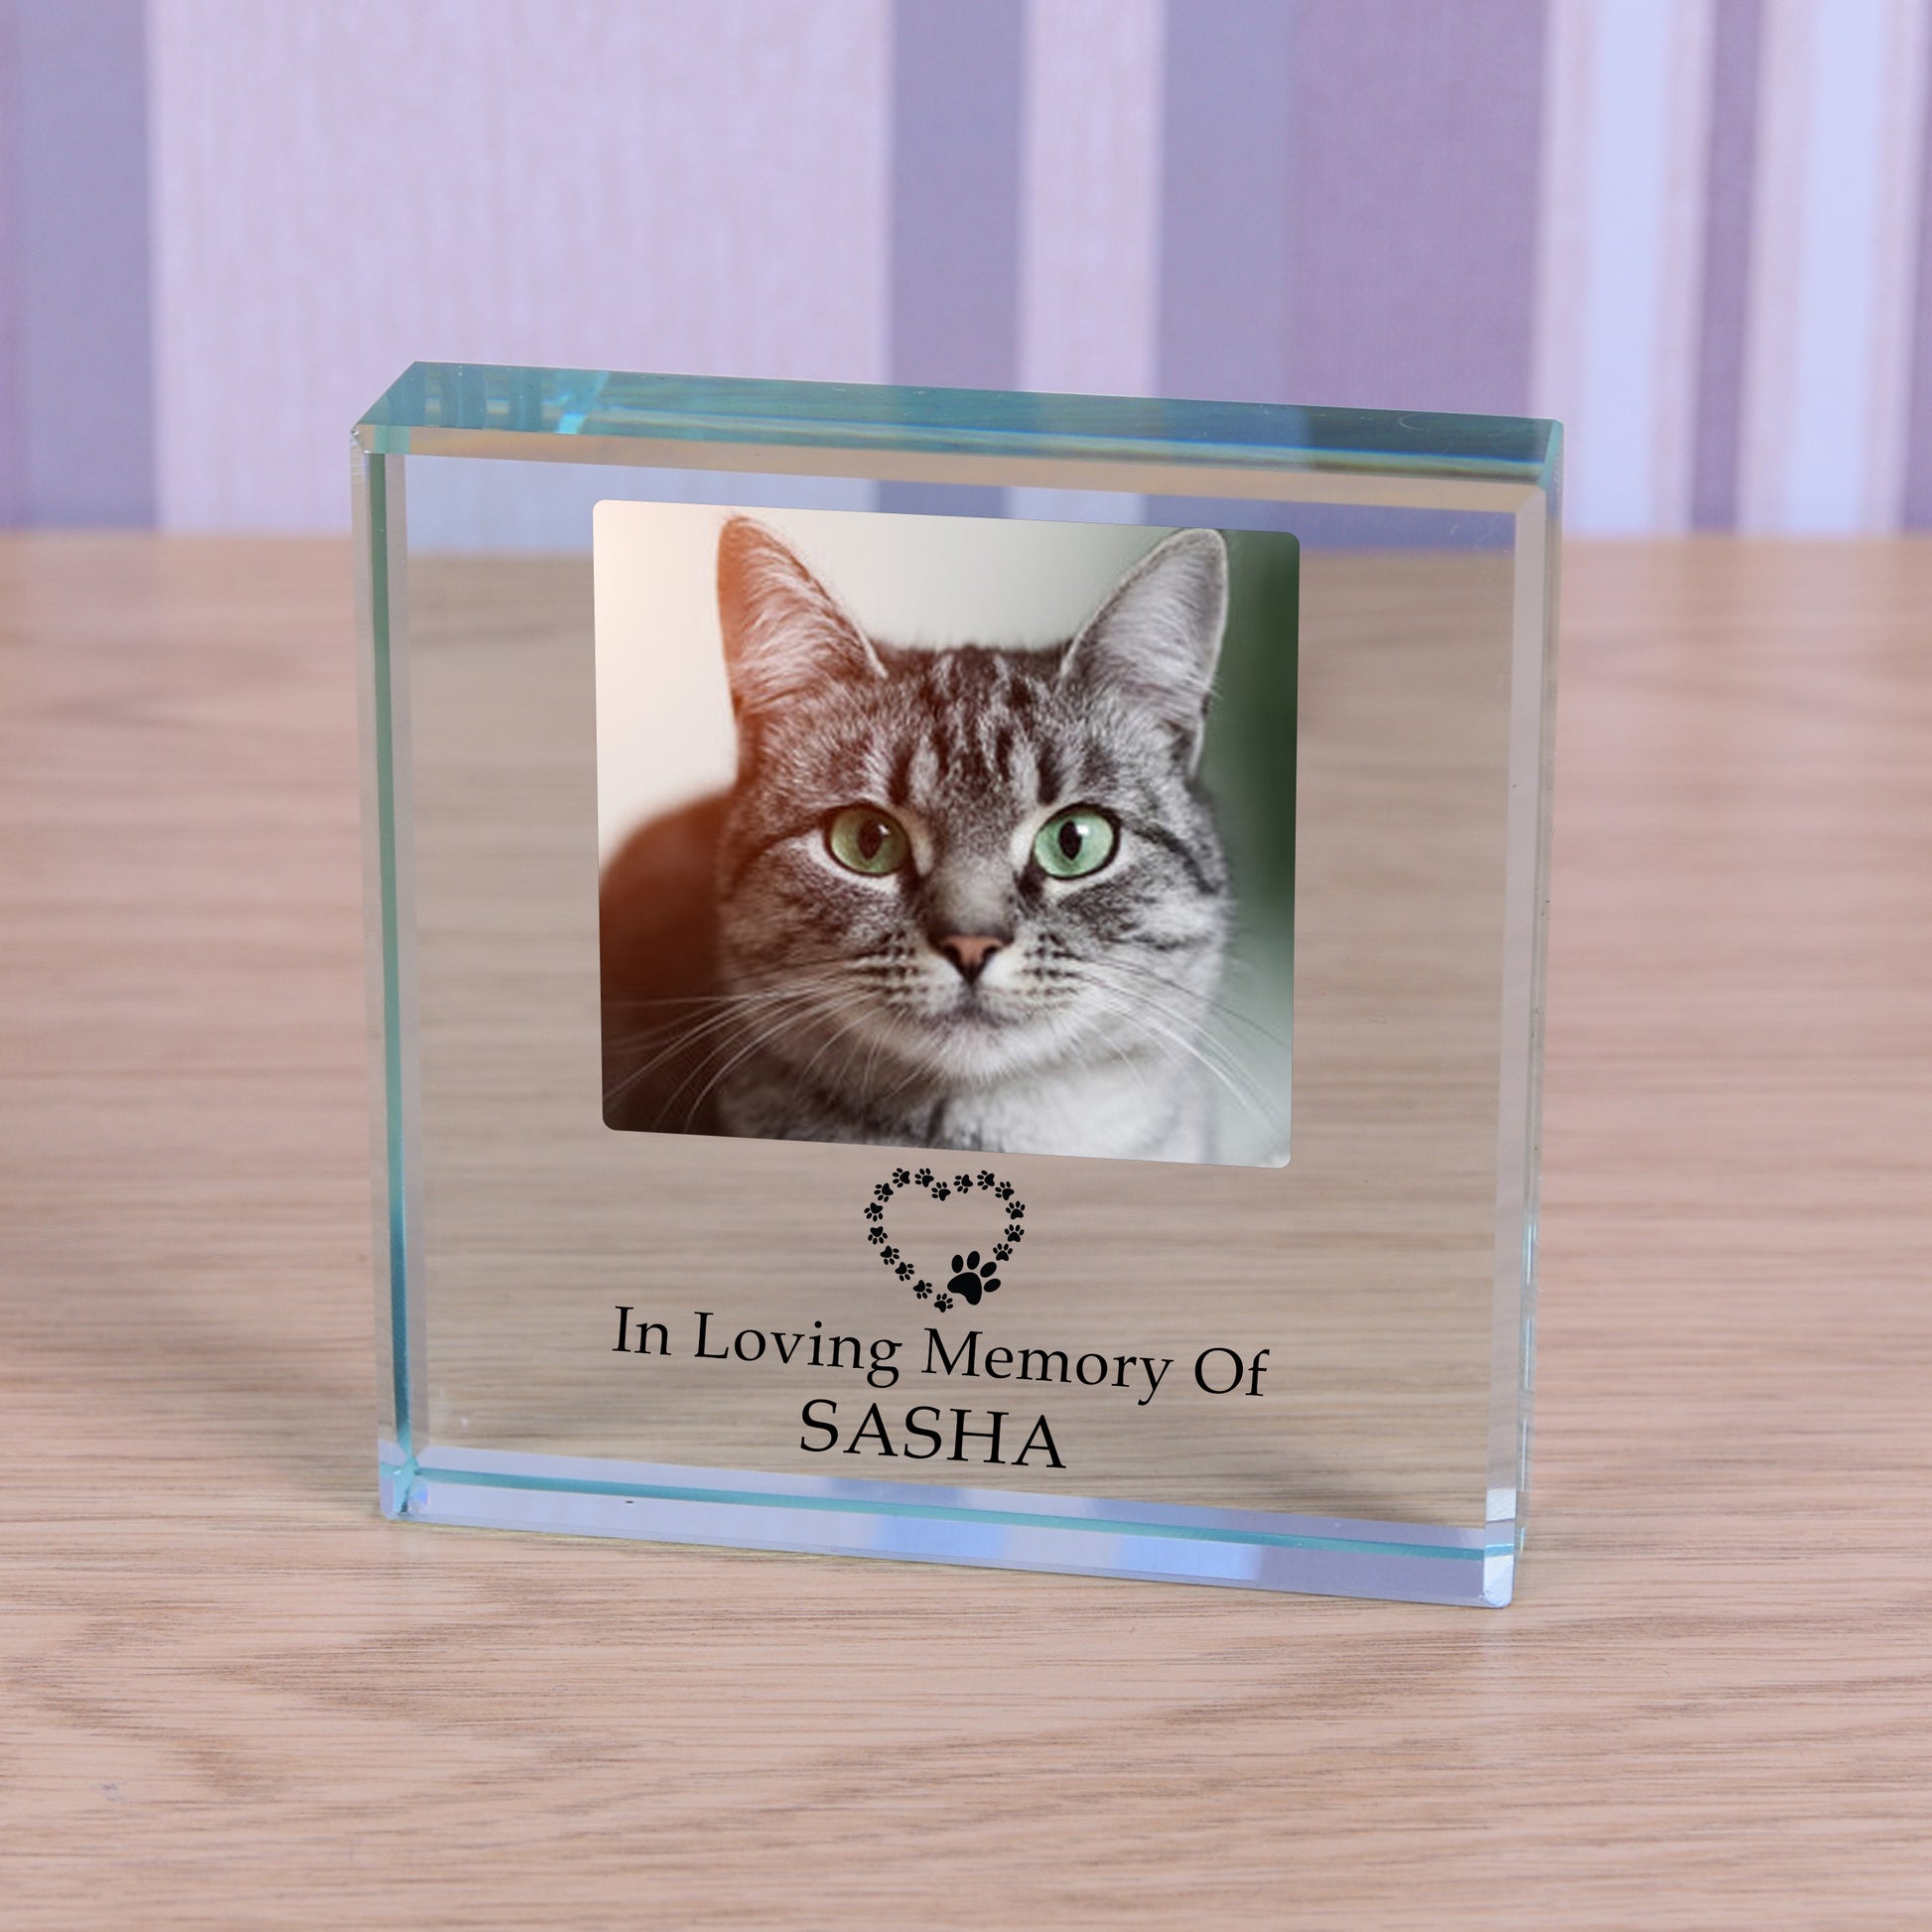 Personalised Photo Pet Memorial Ornament - In Loving Memory Of